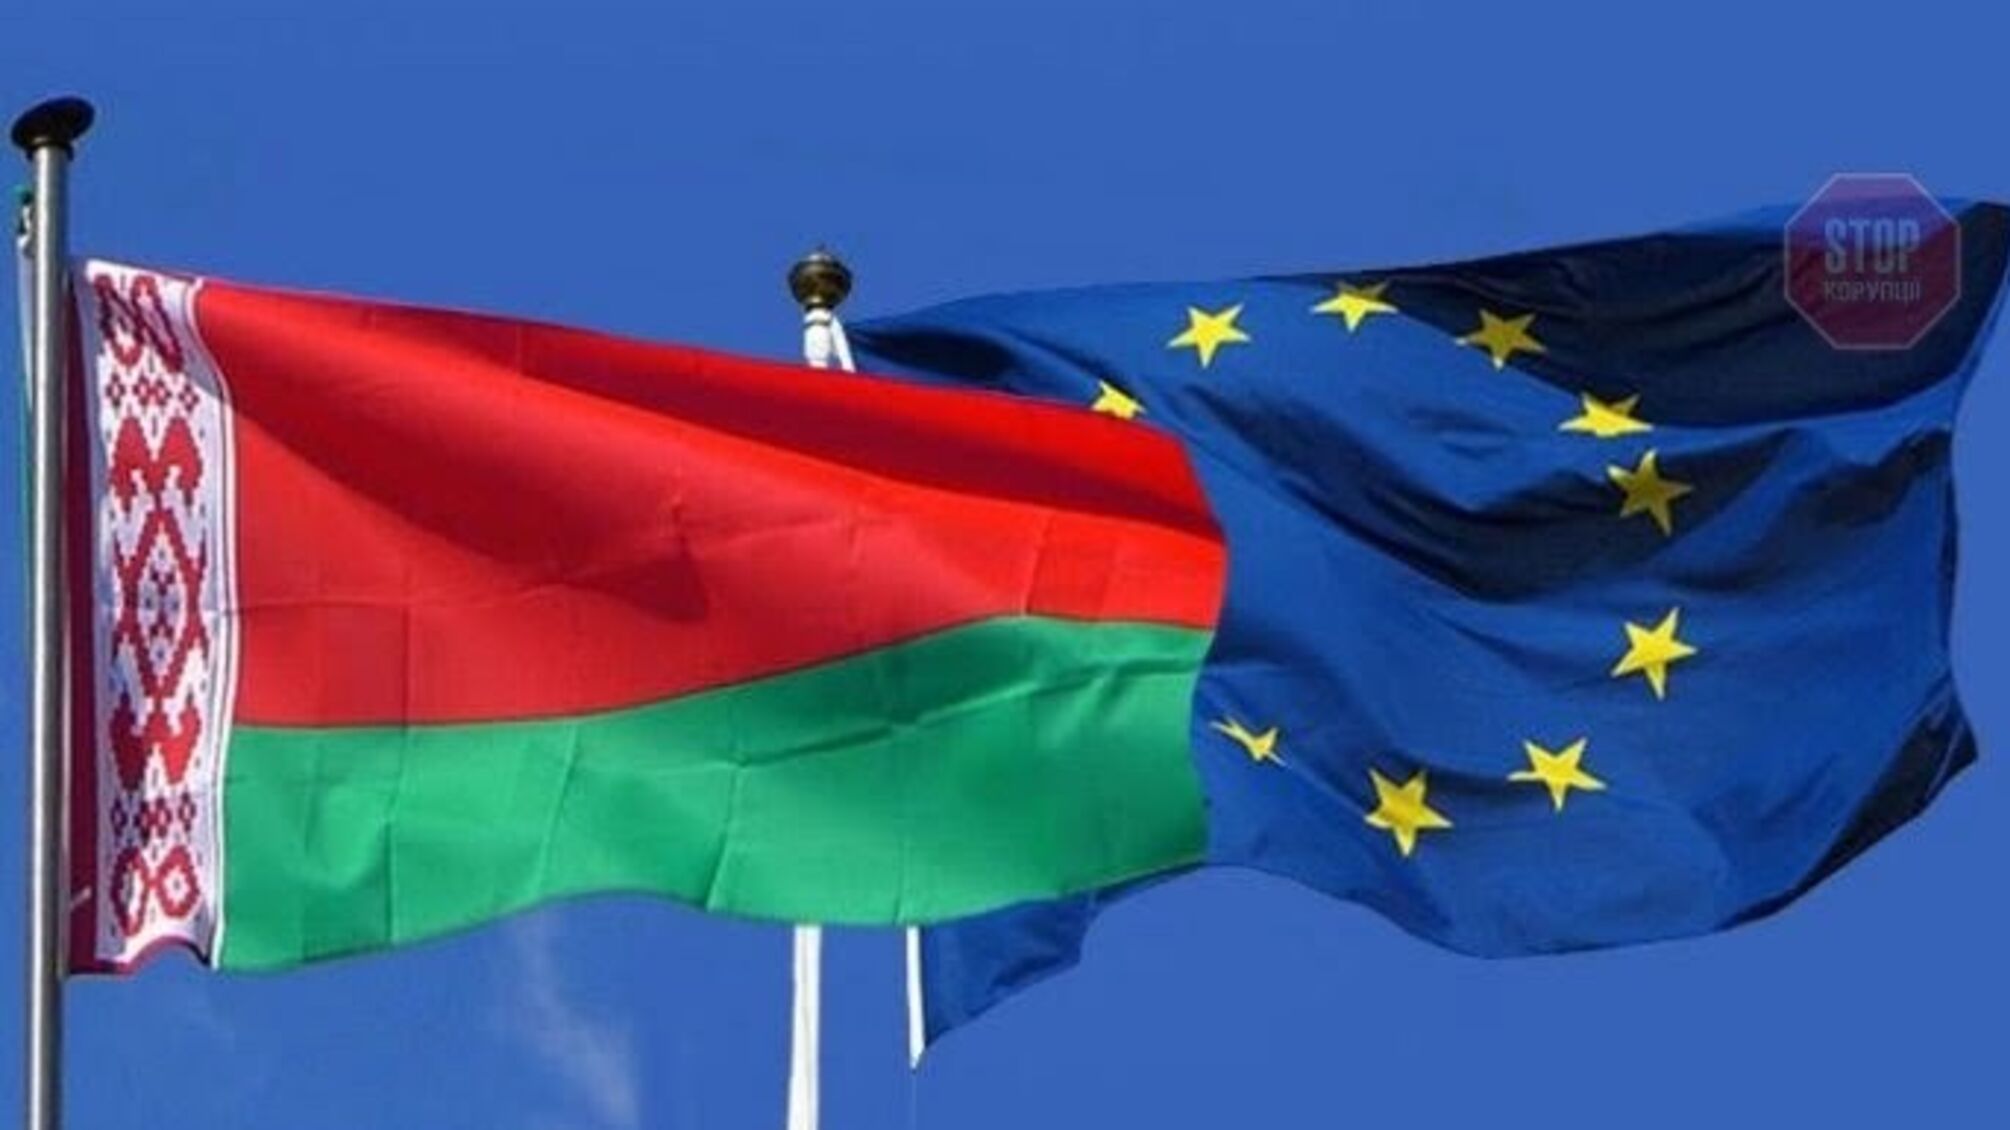 ЕС утвердит новый пакет санкций против Беларуси из-за самолета Ryanair в июне